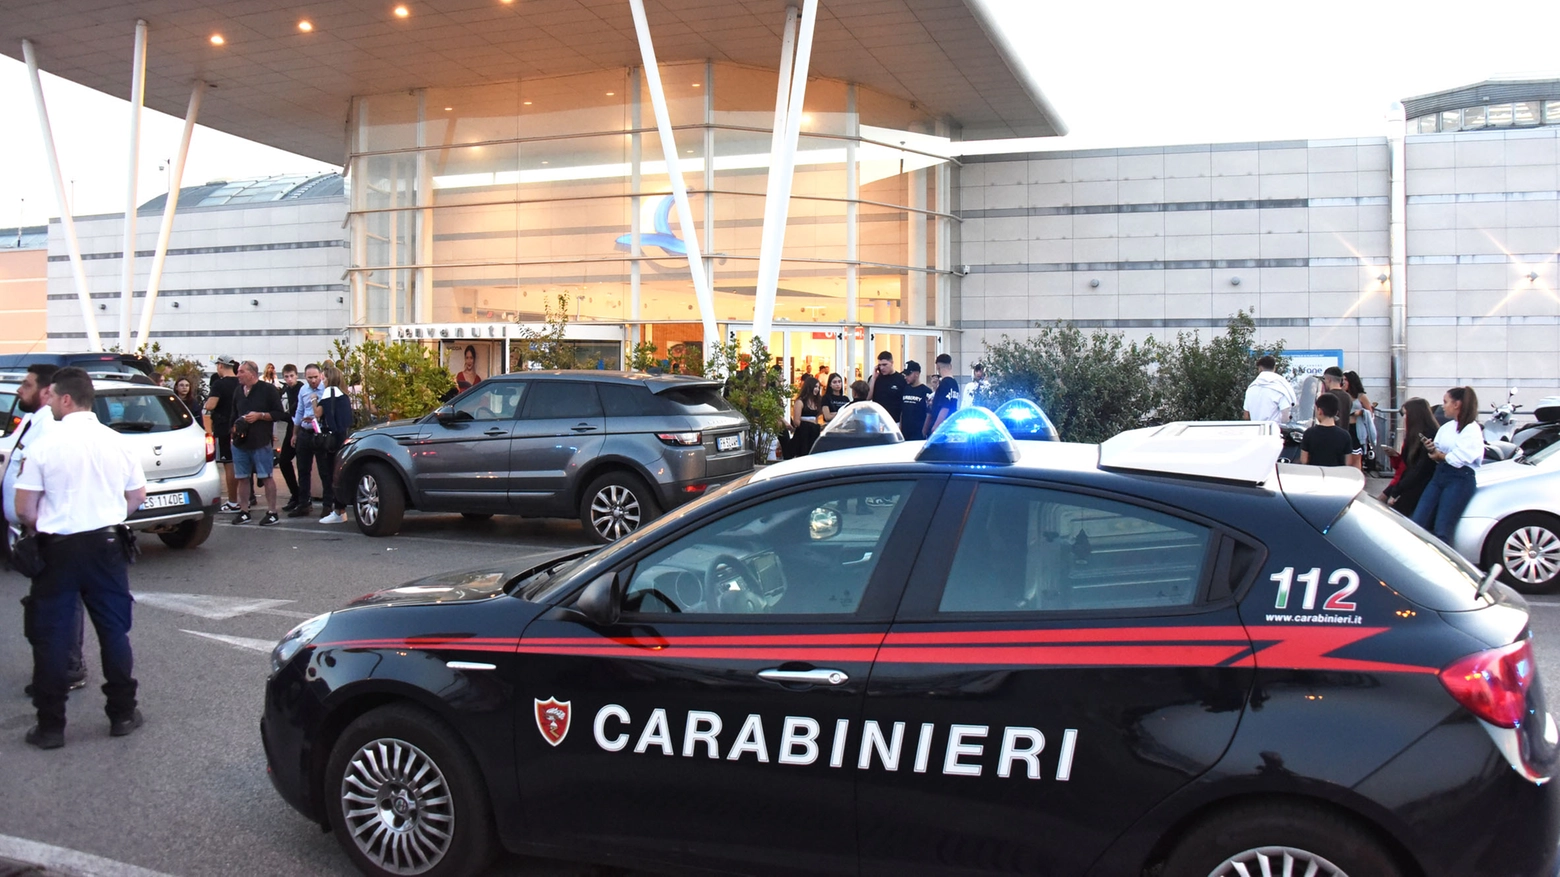 L'arrivo dei carabinieri al centro commerciale Le Befane (foto Migliorini)